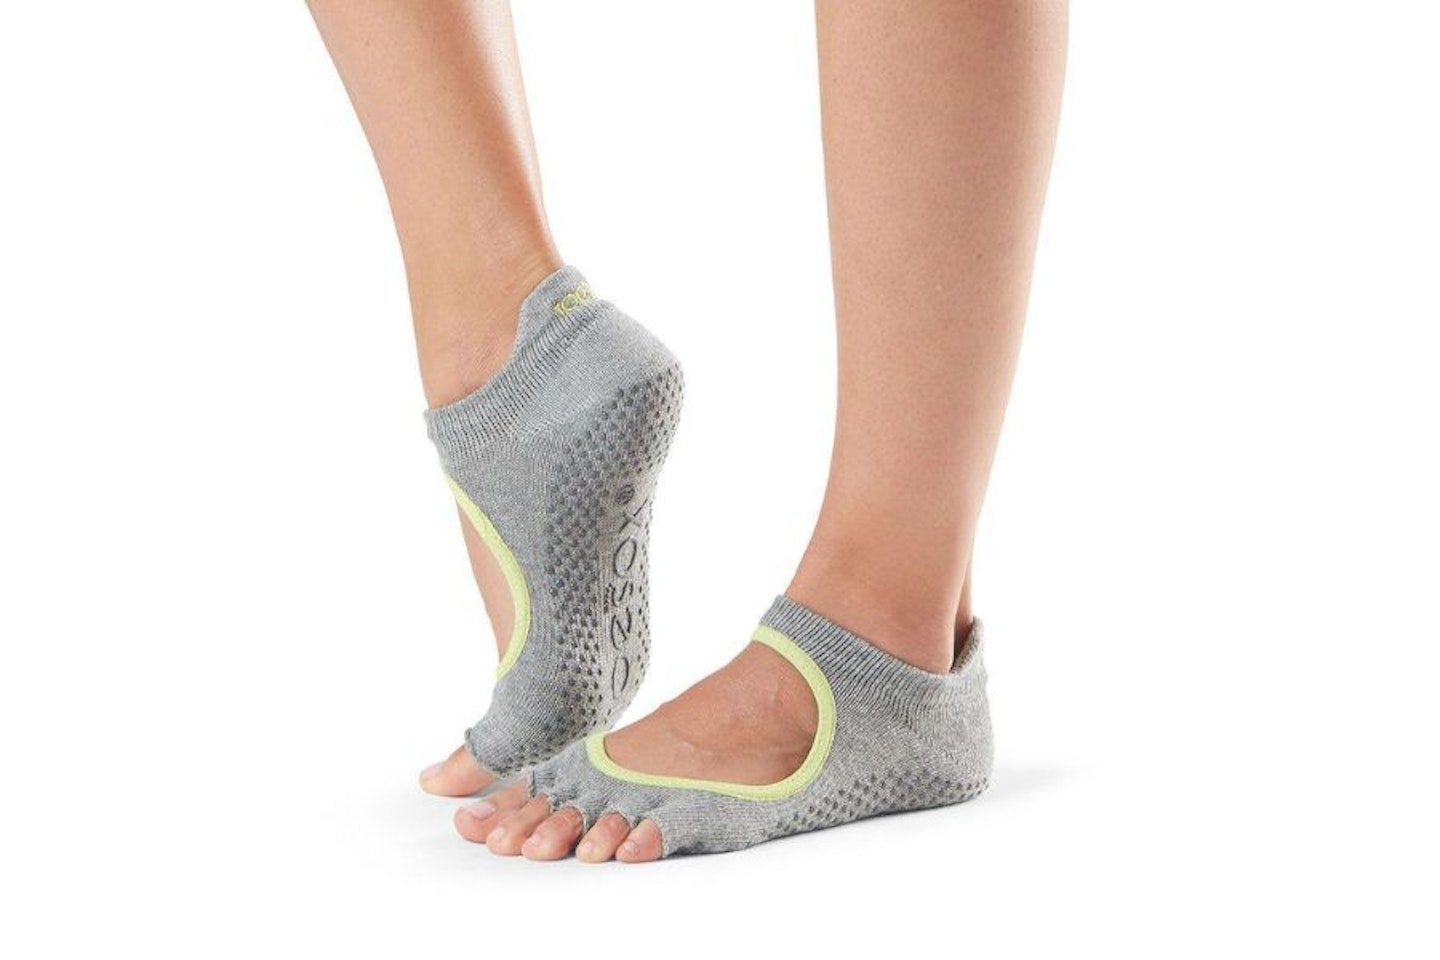 NEW Toesox Women's Bellarina Full Toe Grip Yoga Five Toe Socks 